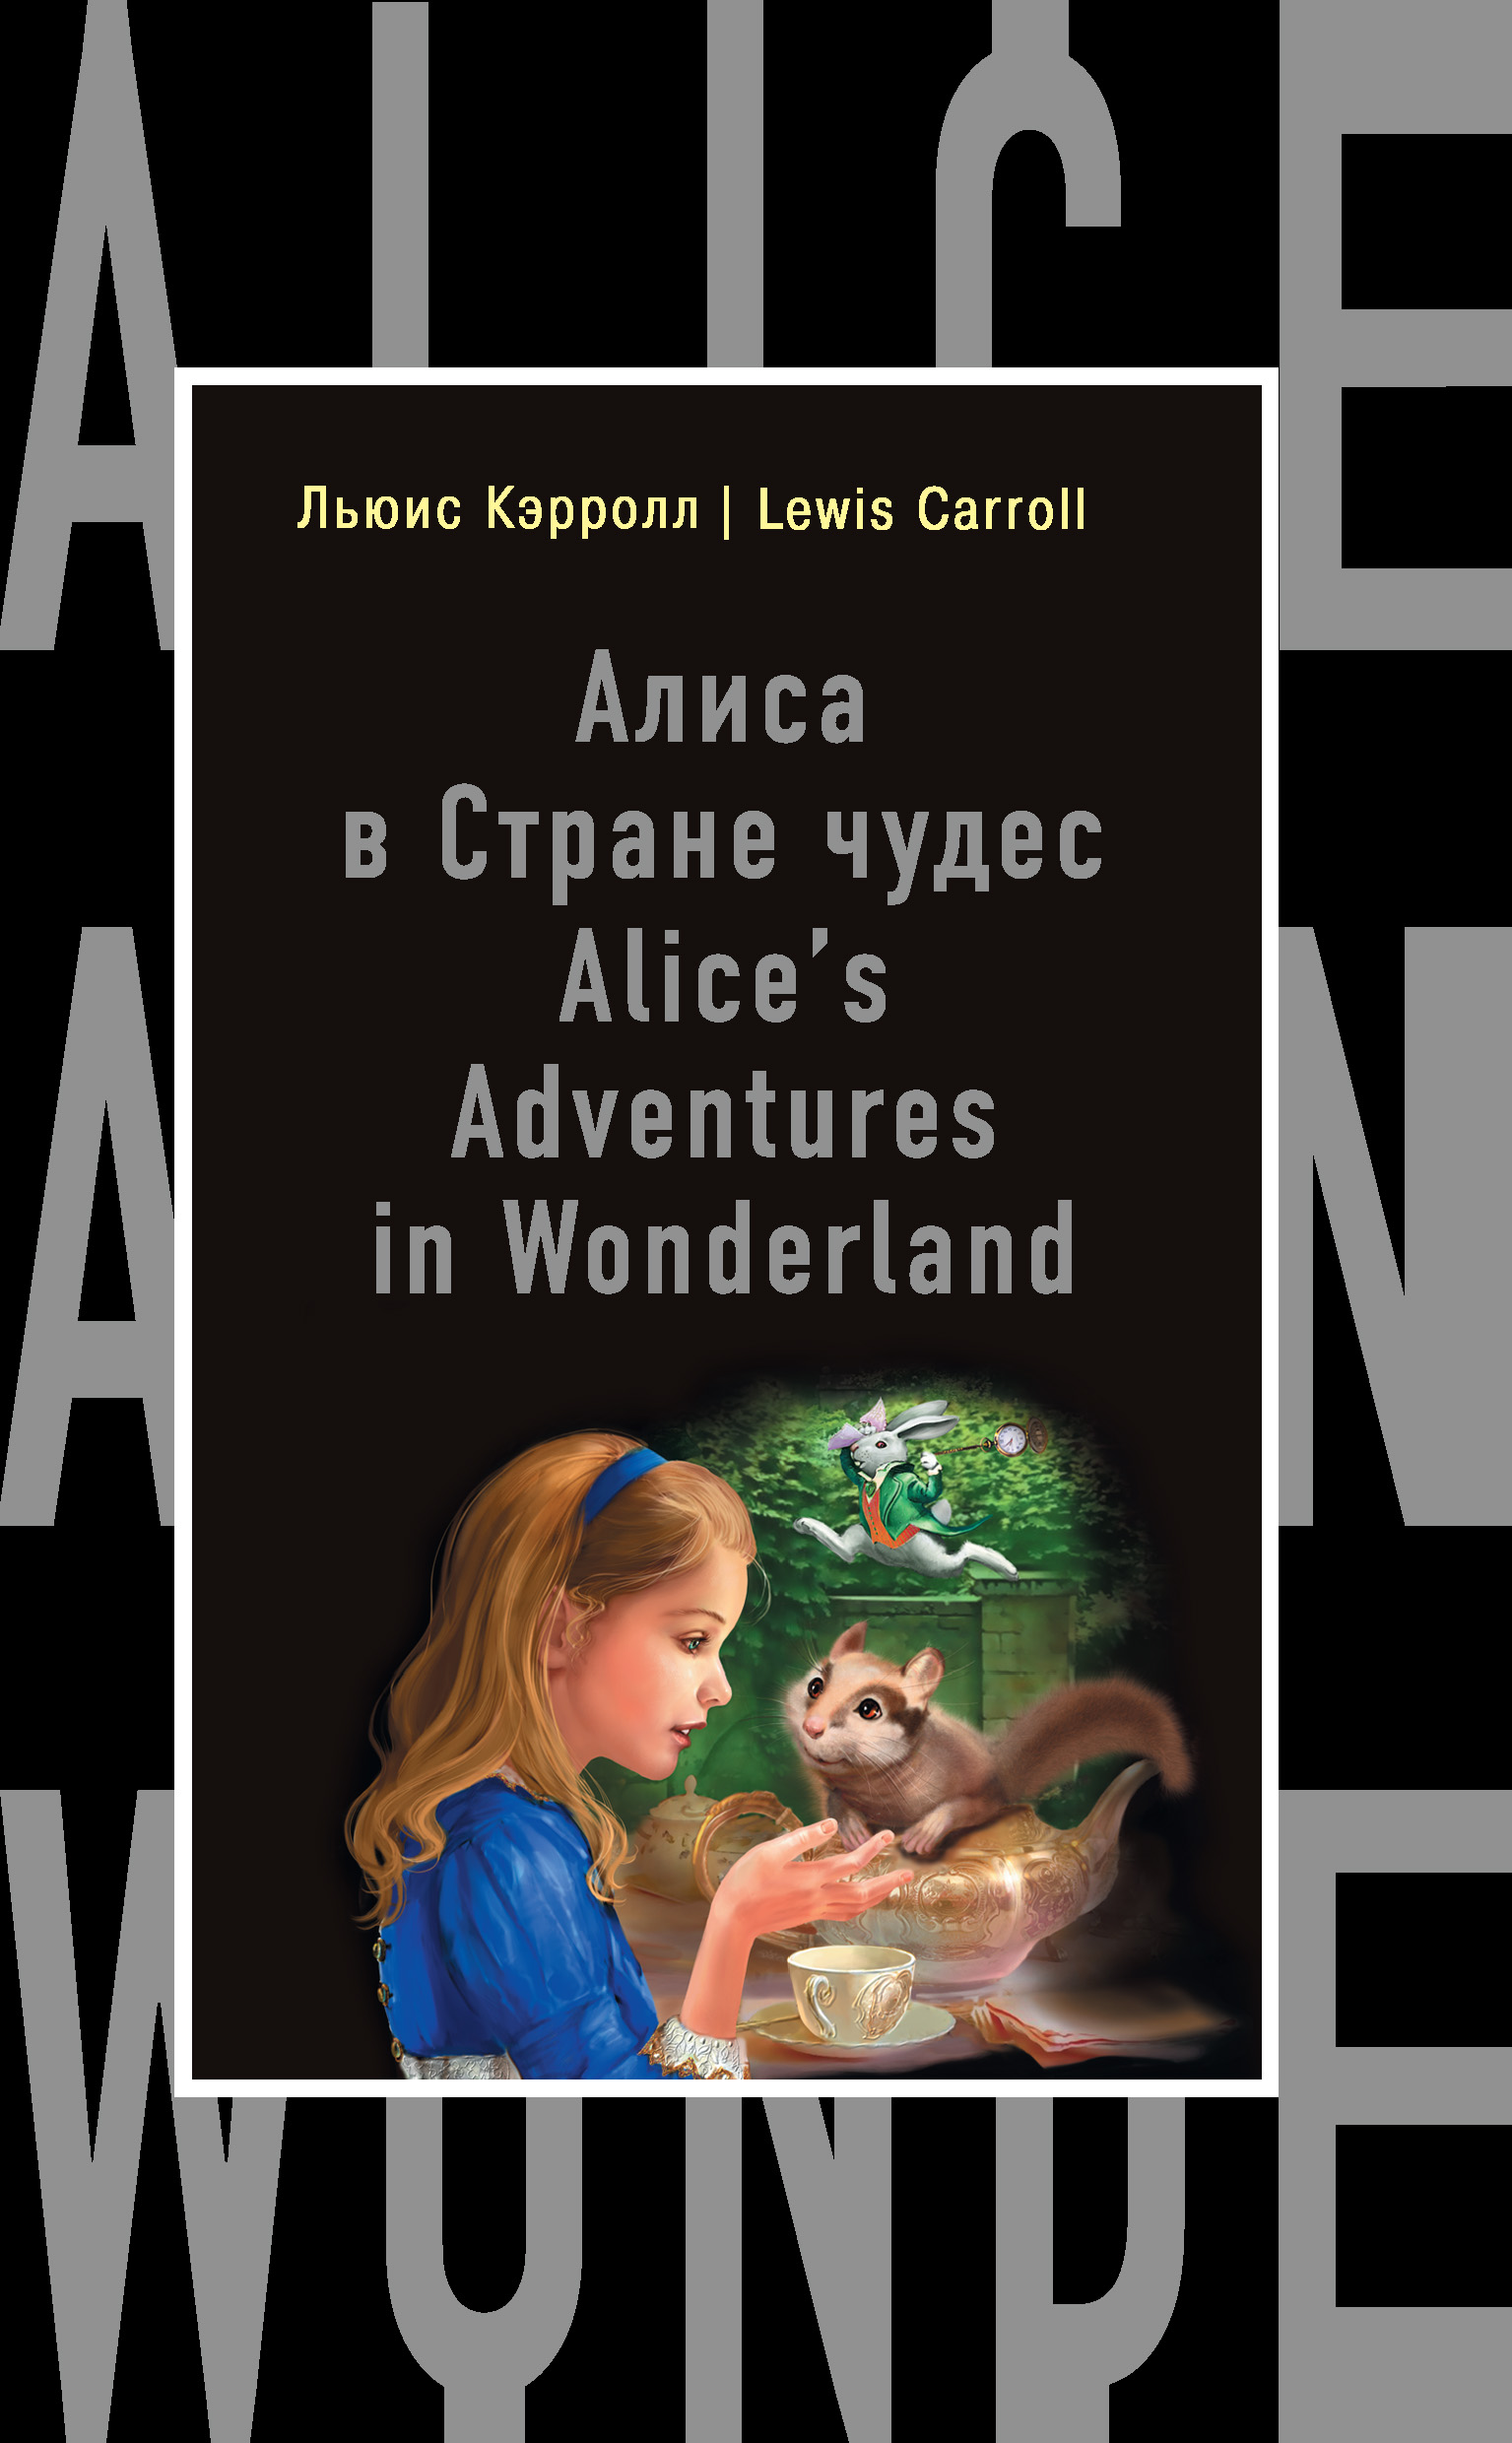 Книга Алиса в Стране чудес / Alice's Adventures in Wonderland из серии Бестселлер на все времена, созданная Льюис Кэрролл, А. Александров, может относится к жанру Иностранные языки, Зарубежная классика, Иностранные языки. Стоимость электронной книги Алиса в Стране чудес / Alice's Adventures in Wonderland с идентификатором 13586811 составляет 119.00 руб.